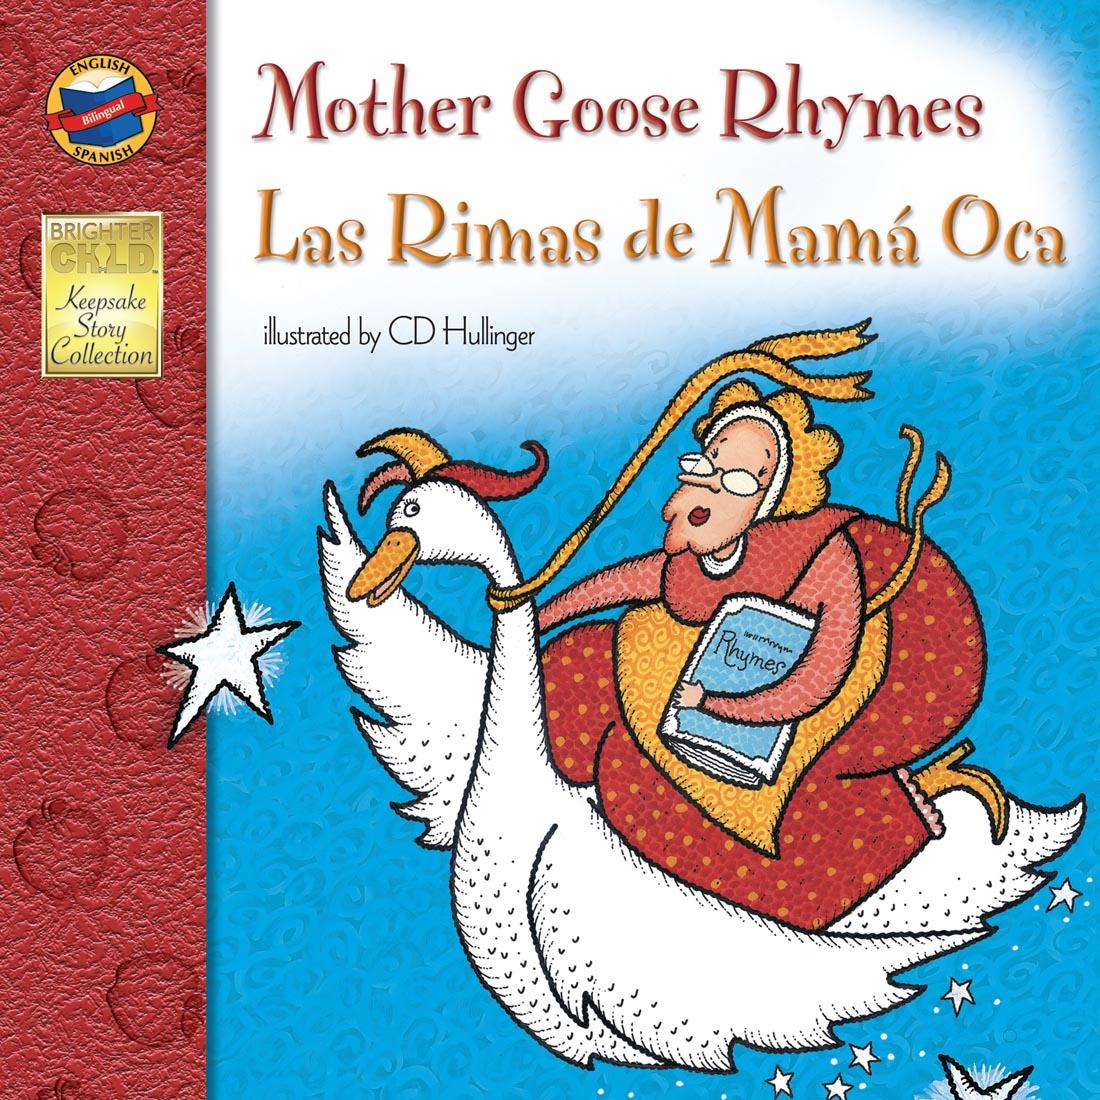 Mother Goose Rhymes Las Rimas de Mama Oca